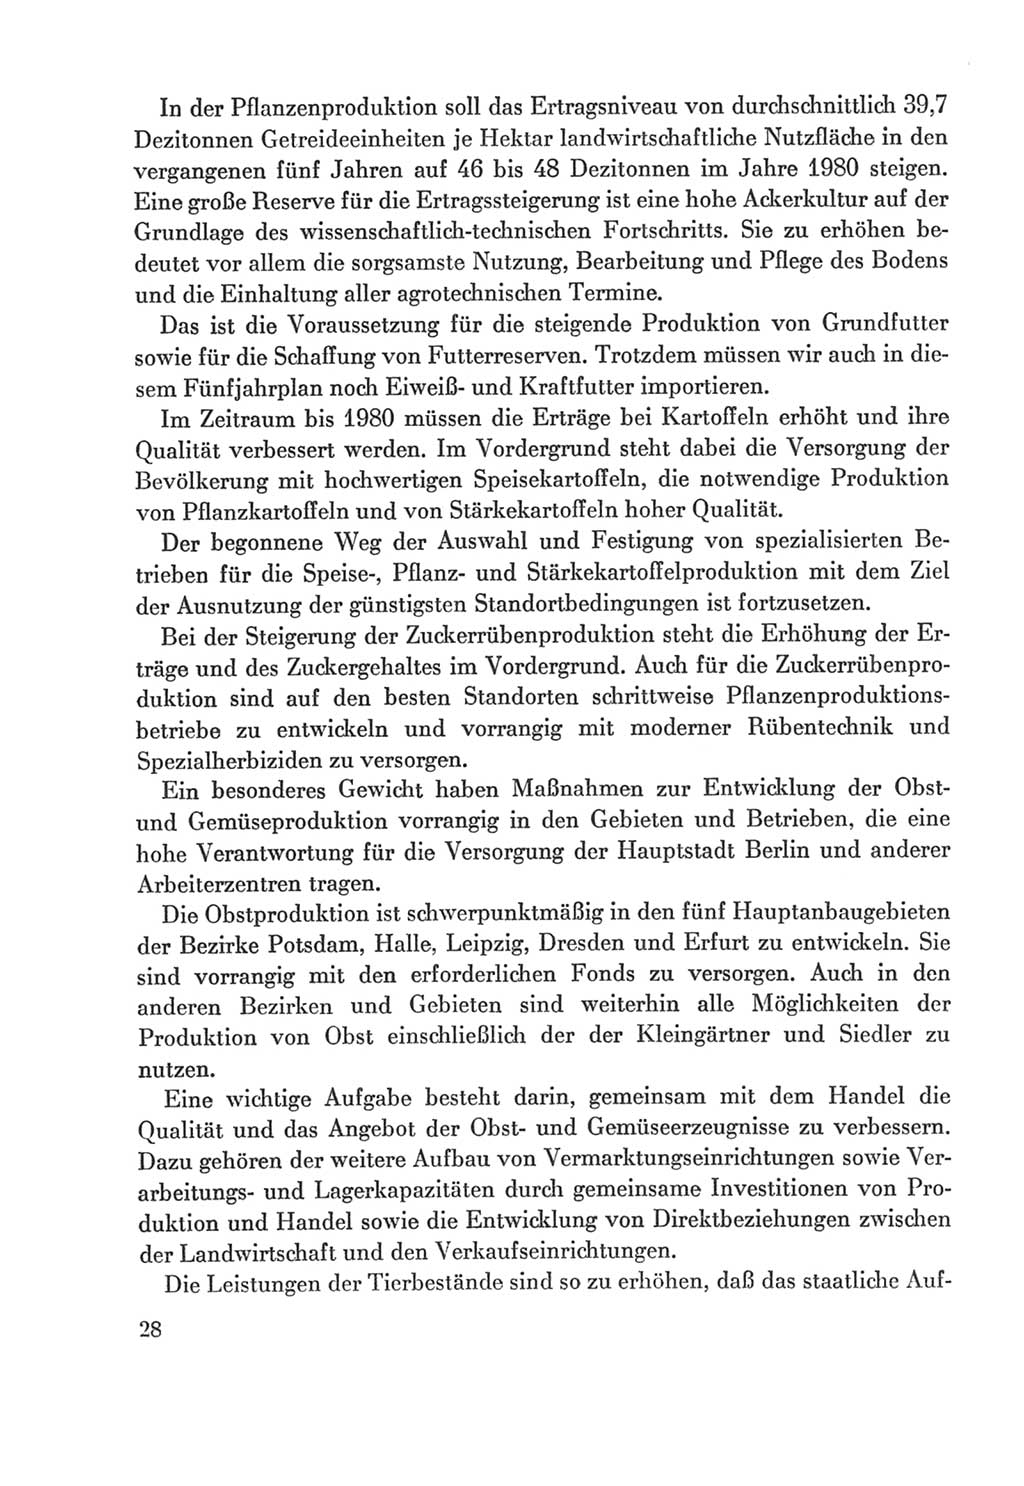 Protokoll der Verhandlungen des Ⅸ. Parteitages der Sozialistischen Einheitspartei Deutschlands (SED) [Deutsche Demokratische Republik (DDR)] 1976, Band 2, Seite 28 (Prot. Verh. Ⅸ. PT SED DDR 1976, Bd. 2, S. 28)